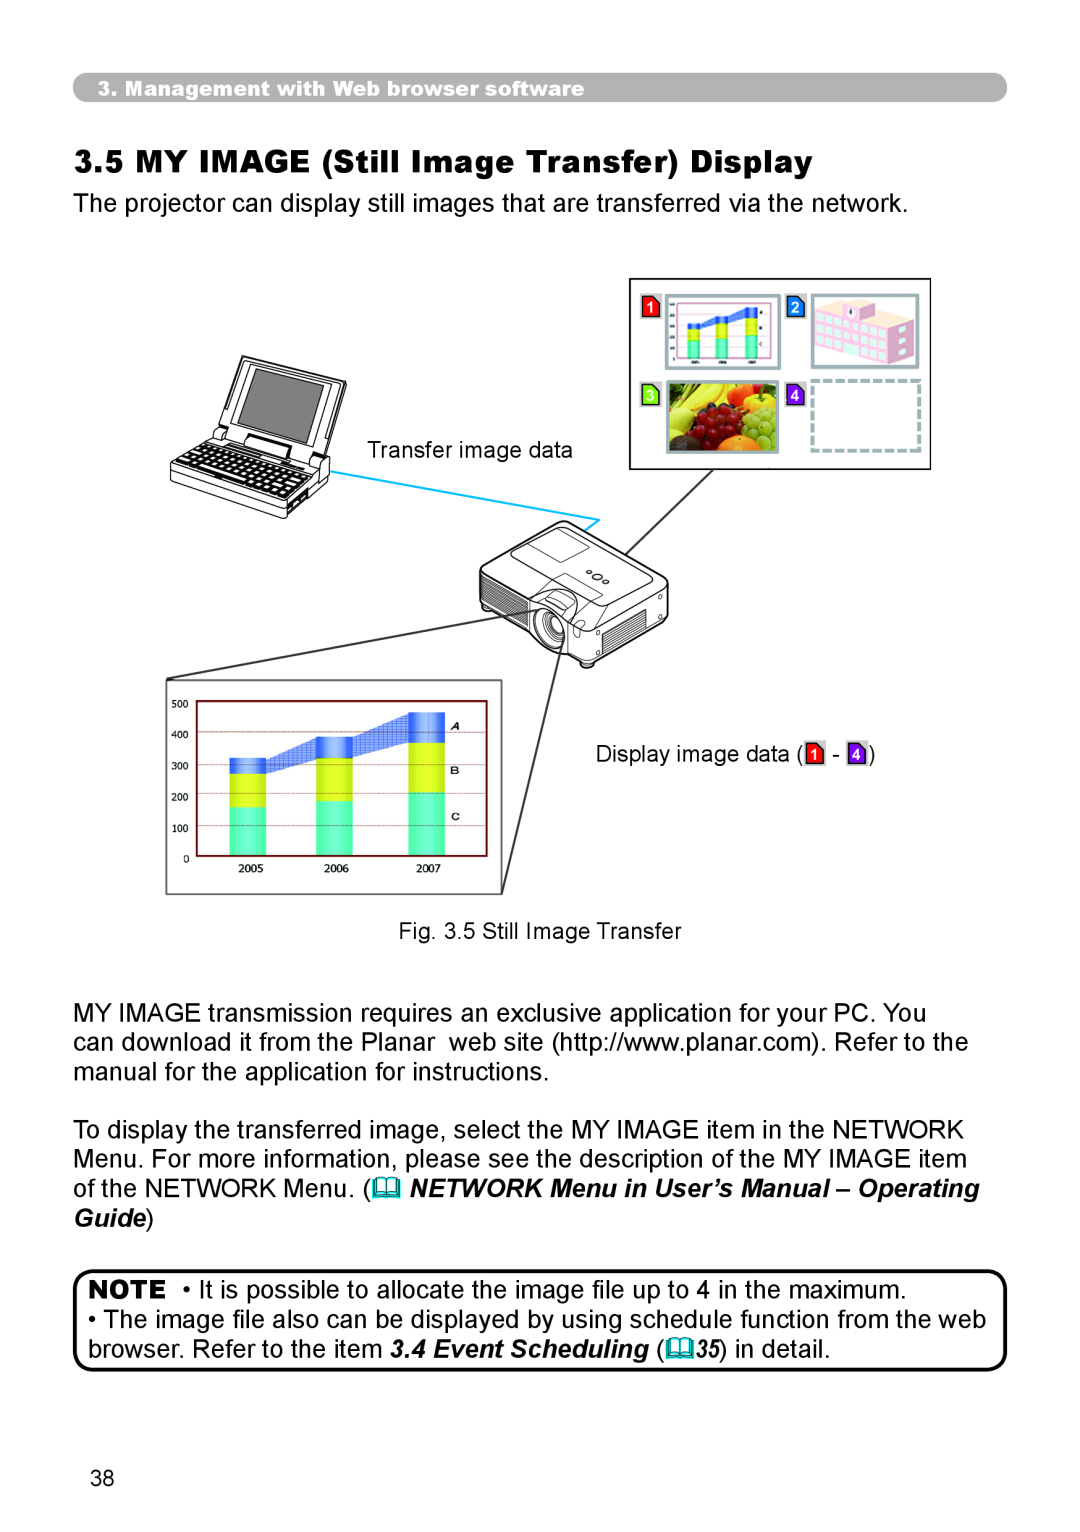 Planar PR9030 MY IMAGE Still Image Transfer Display, Transfer image data Display image data 1, 5 Still Image Transfer 